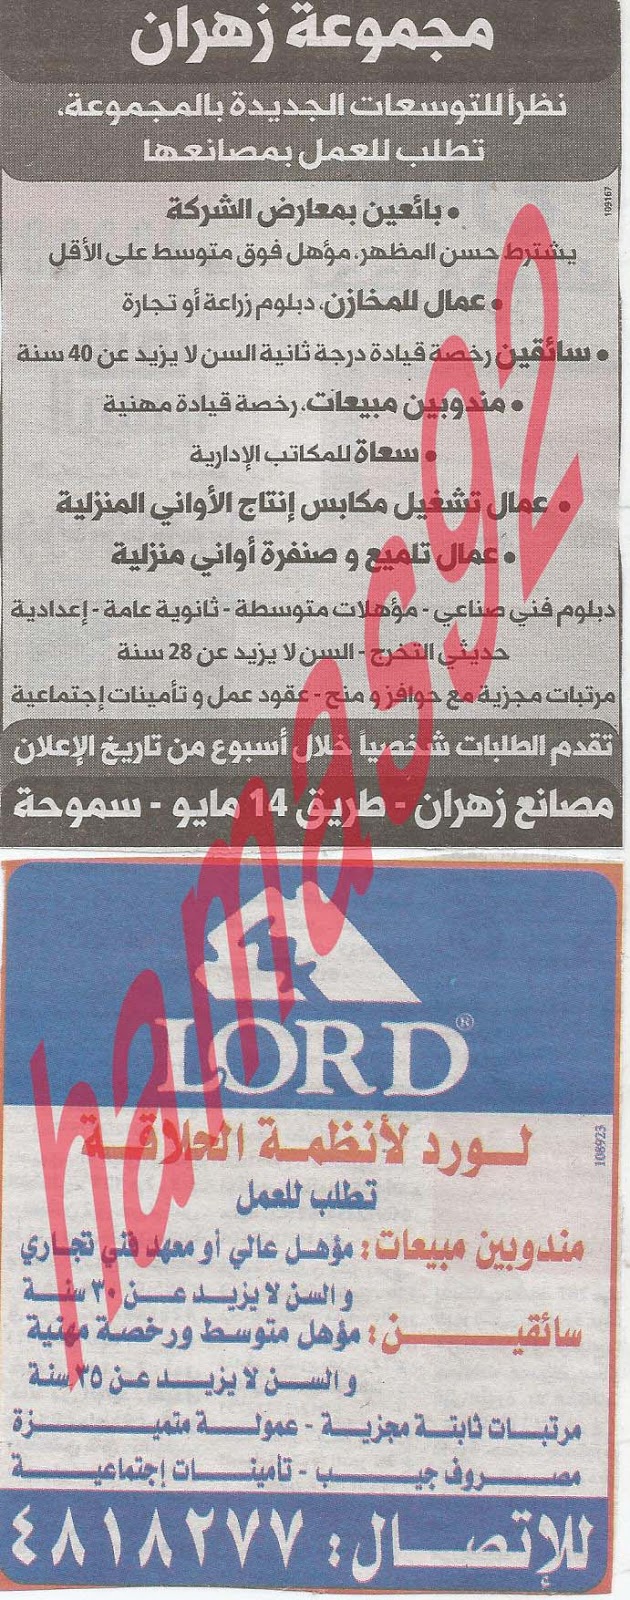 وظائف خالية فى جريدة الوسيط الاسكندرية الثلاثاء 23-04-2013 %D9%88+%D8%B3+%D8%B3+13